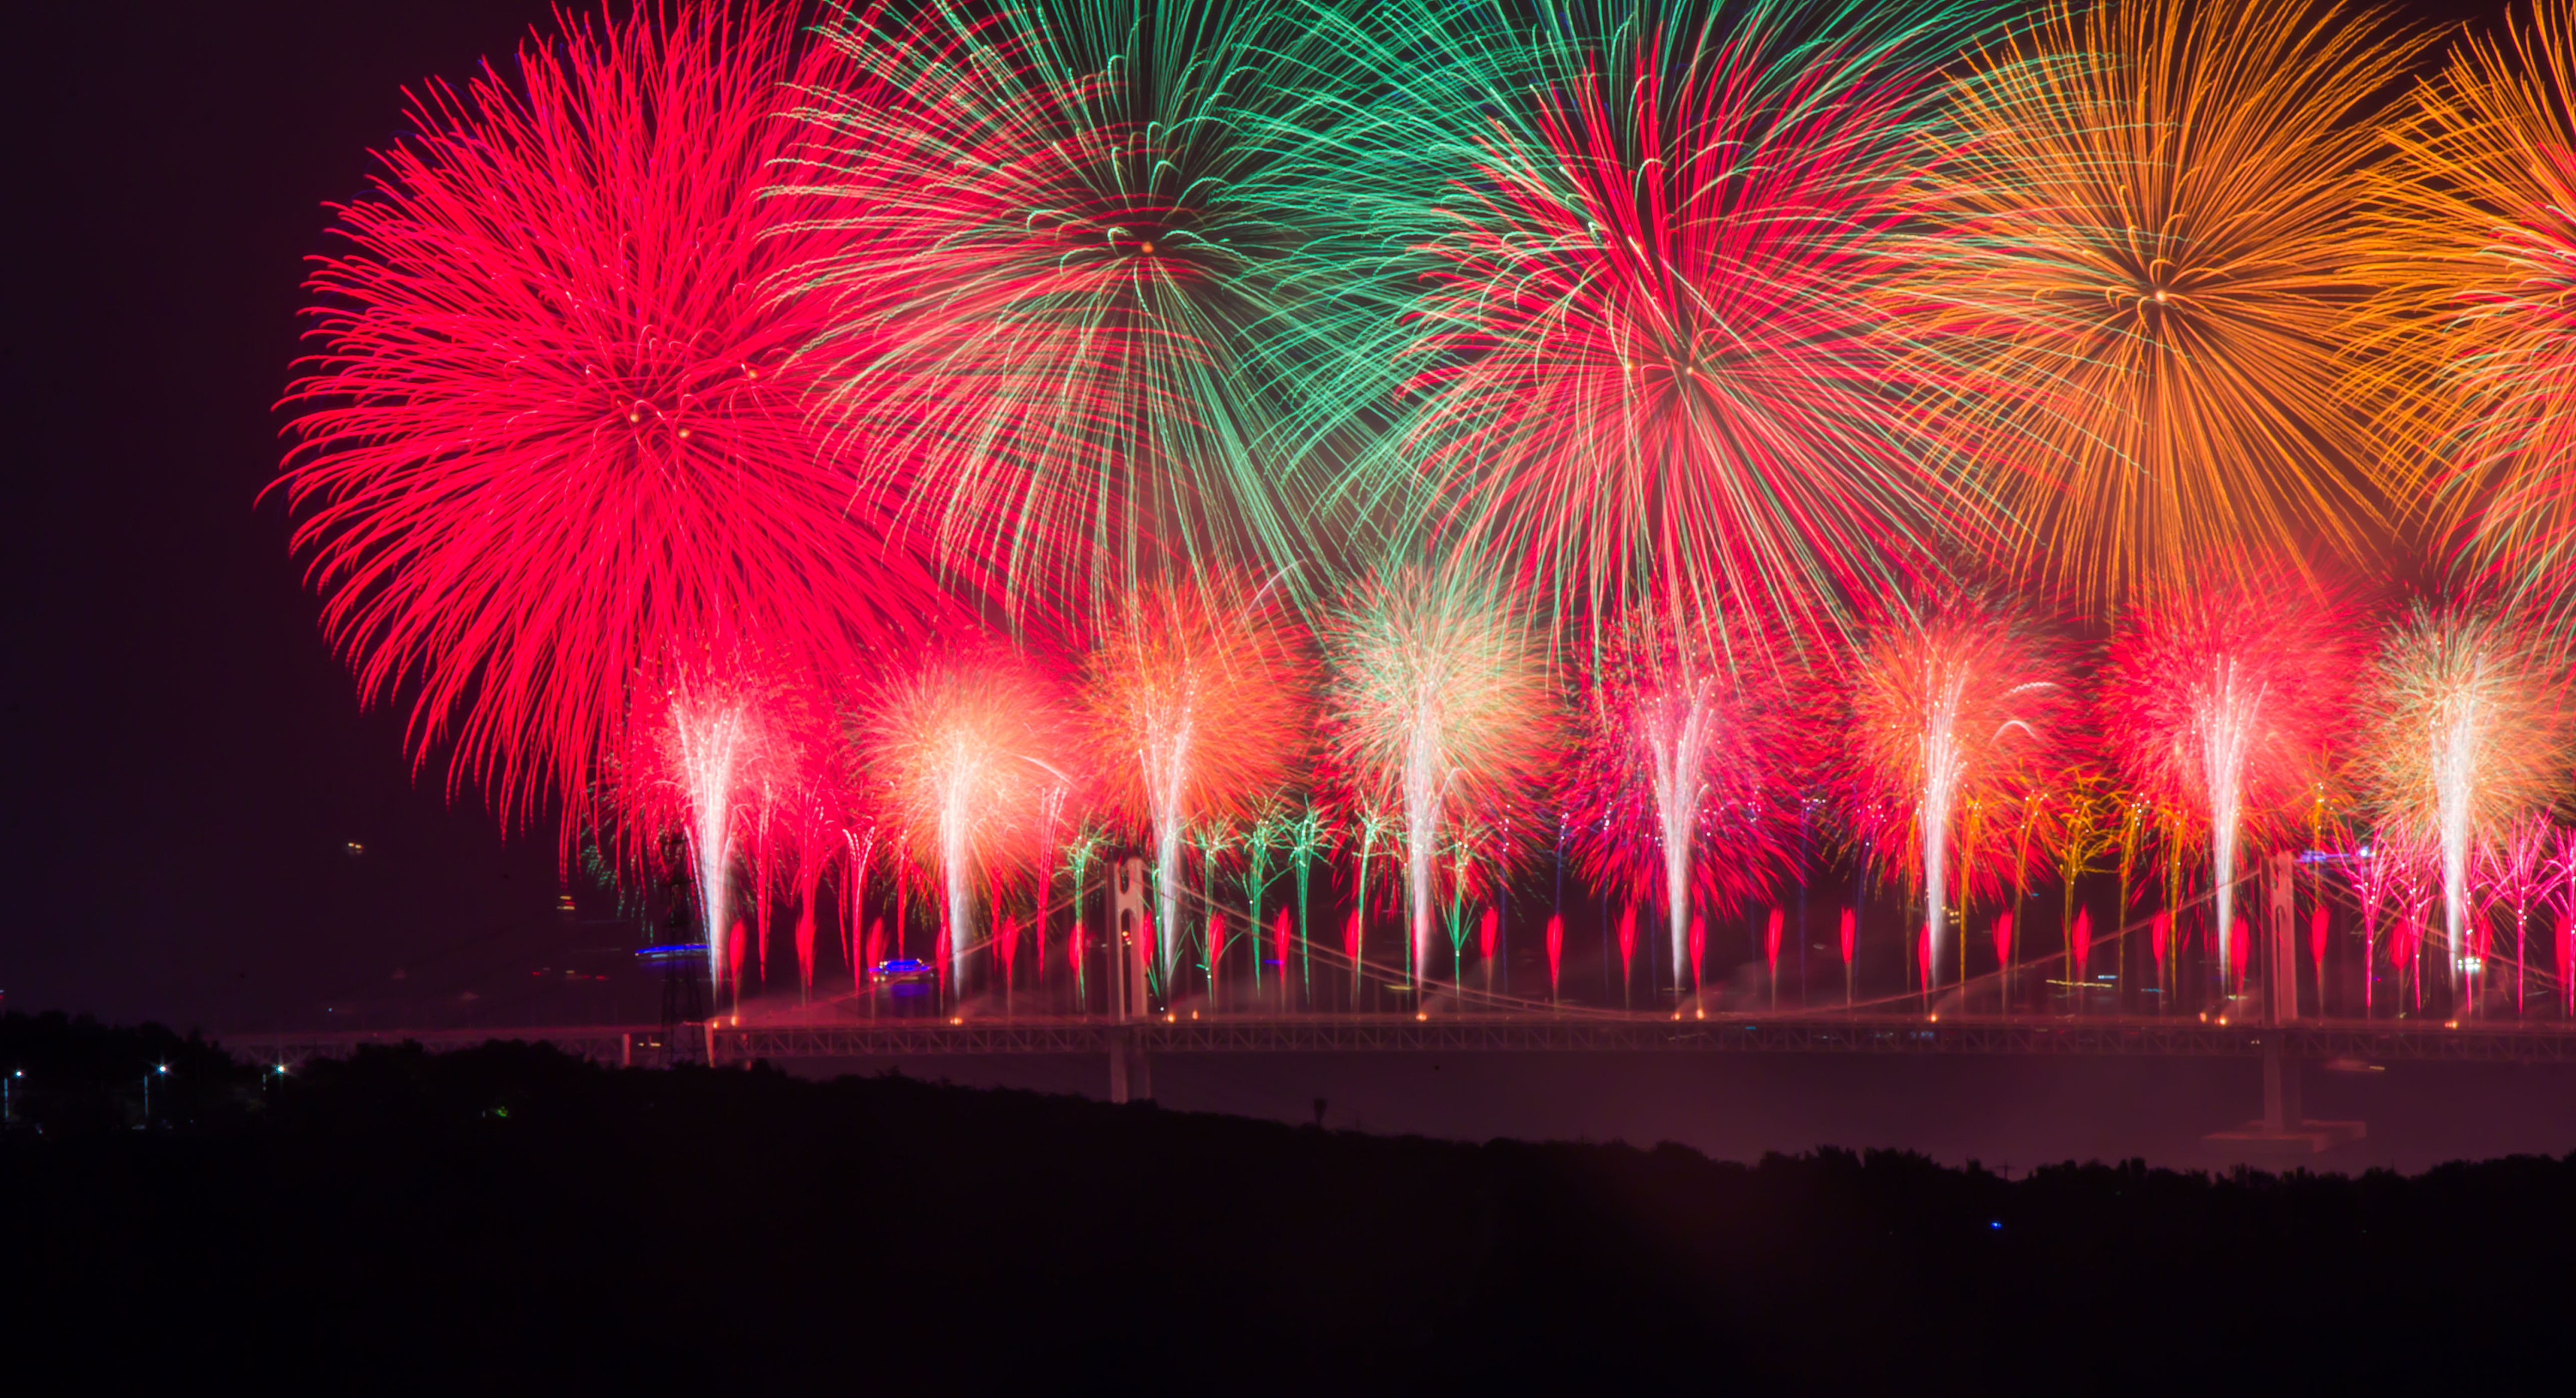 2017年釜山烟花节:fireworks: